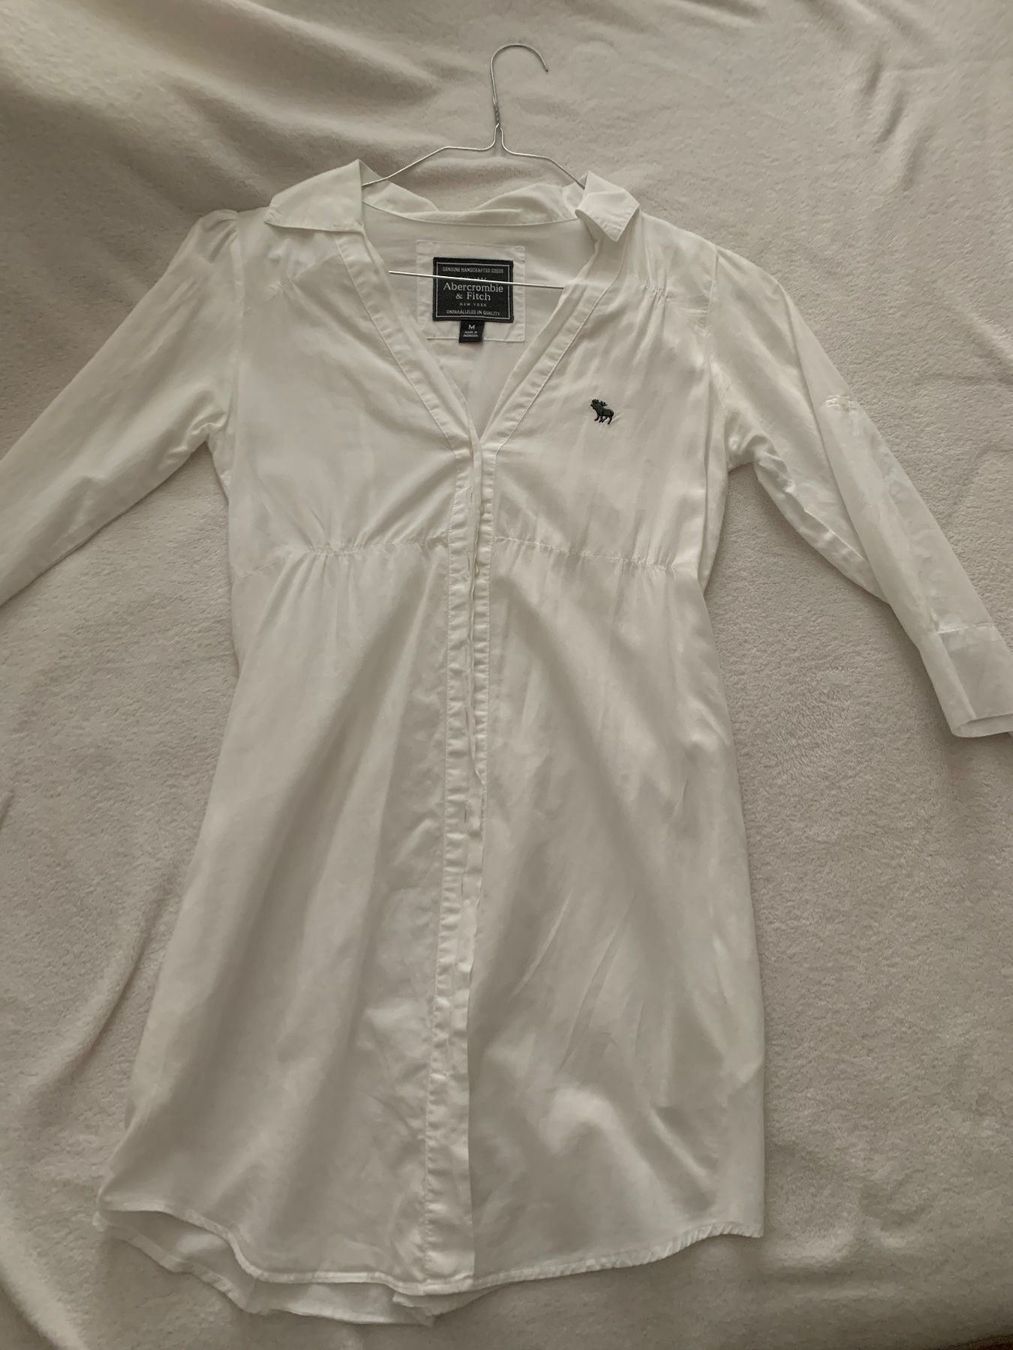 Damen Bluse Hemd Kleid Abercrobie Fitc Kaufen Auf Ricardo